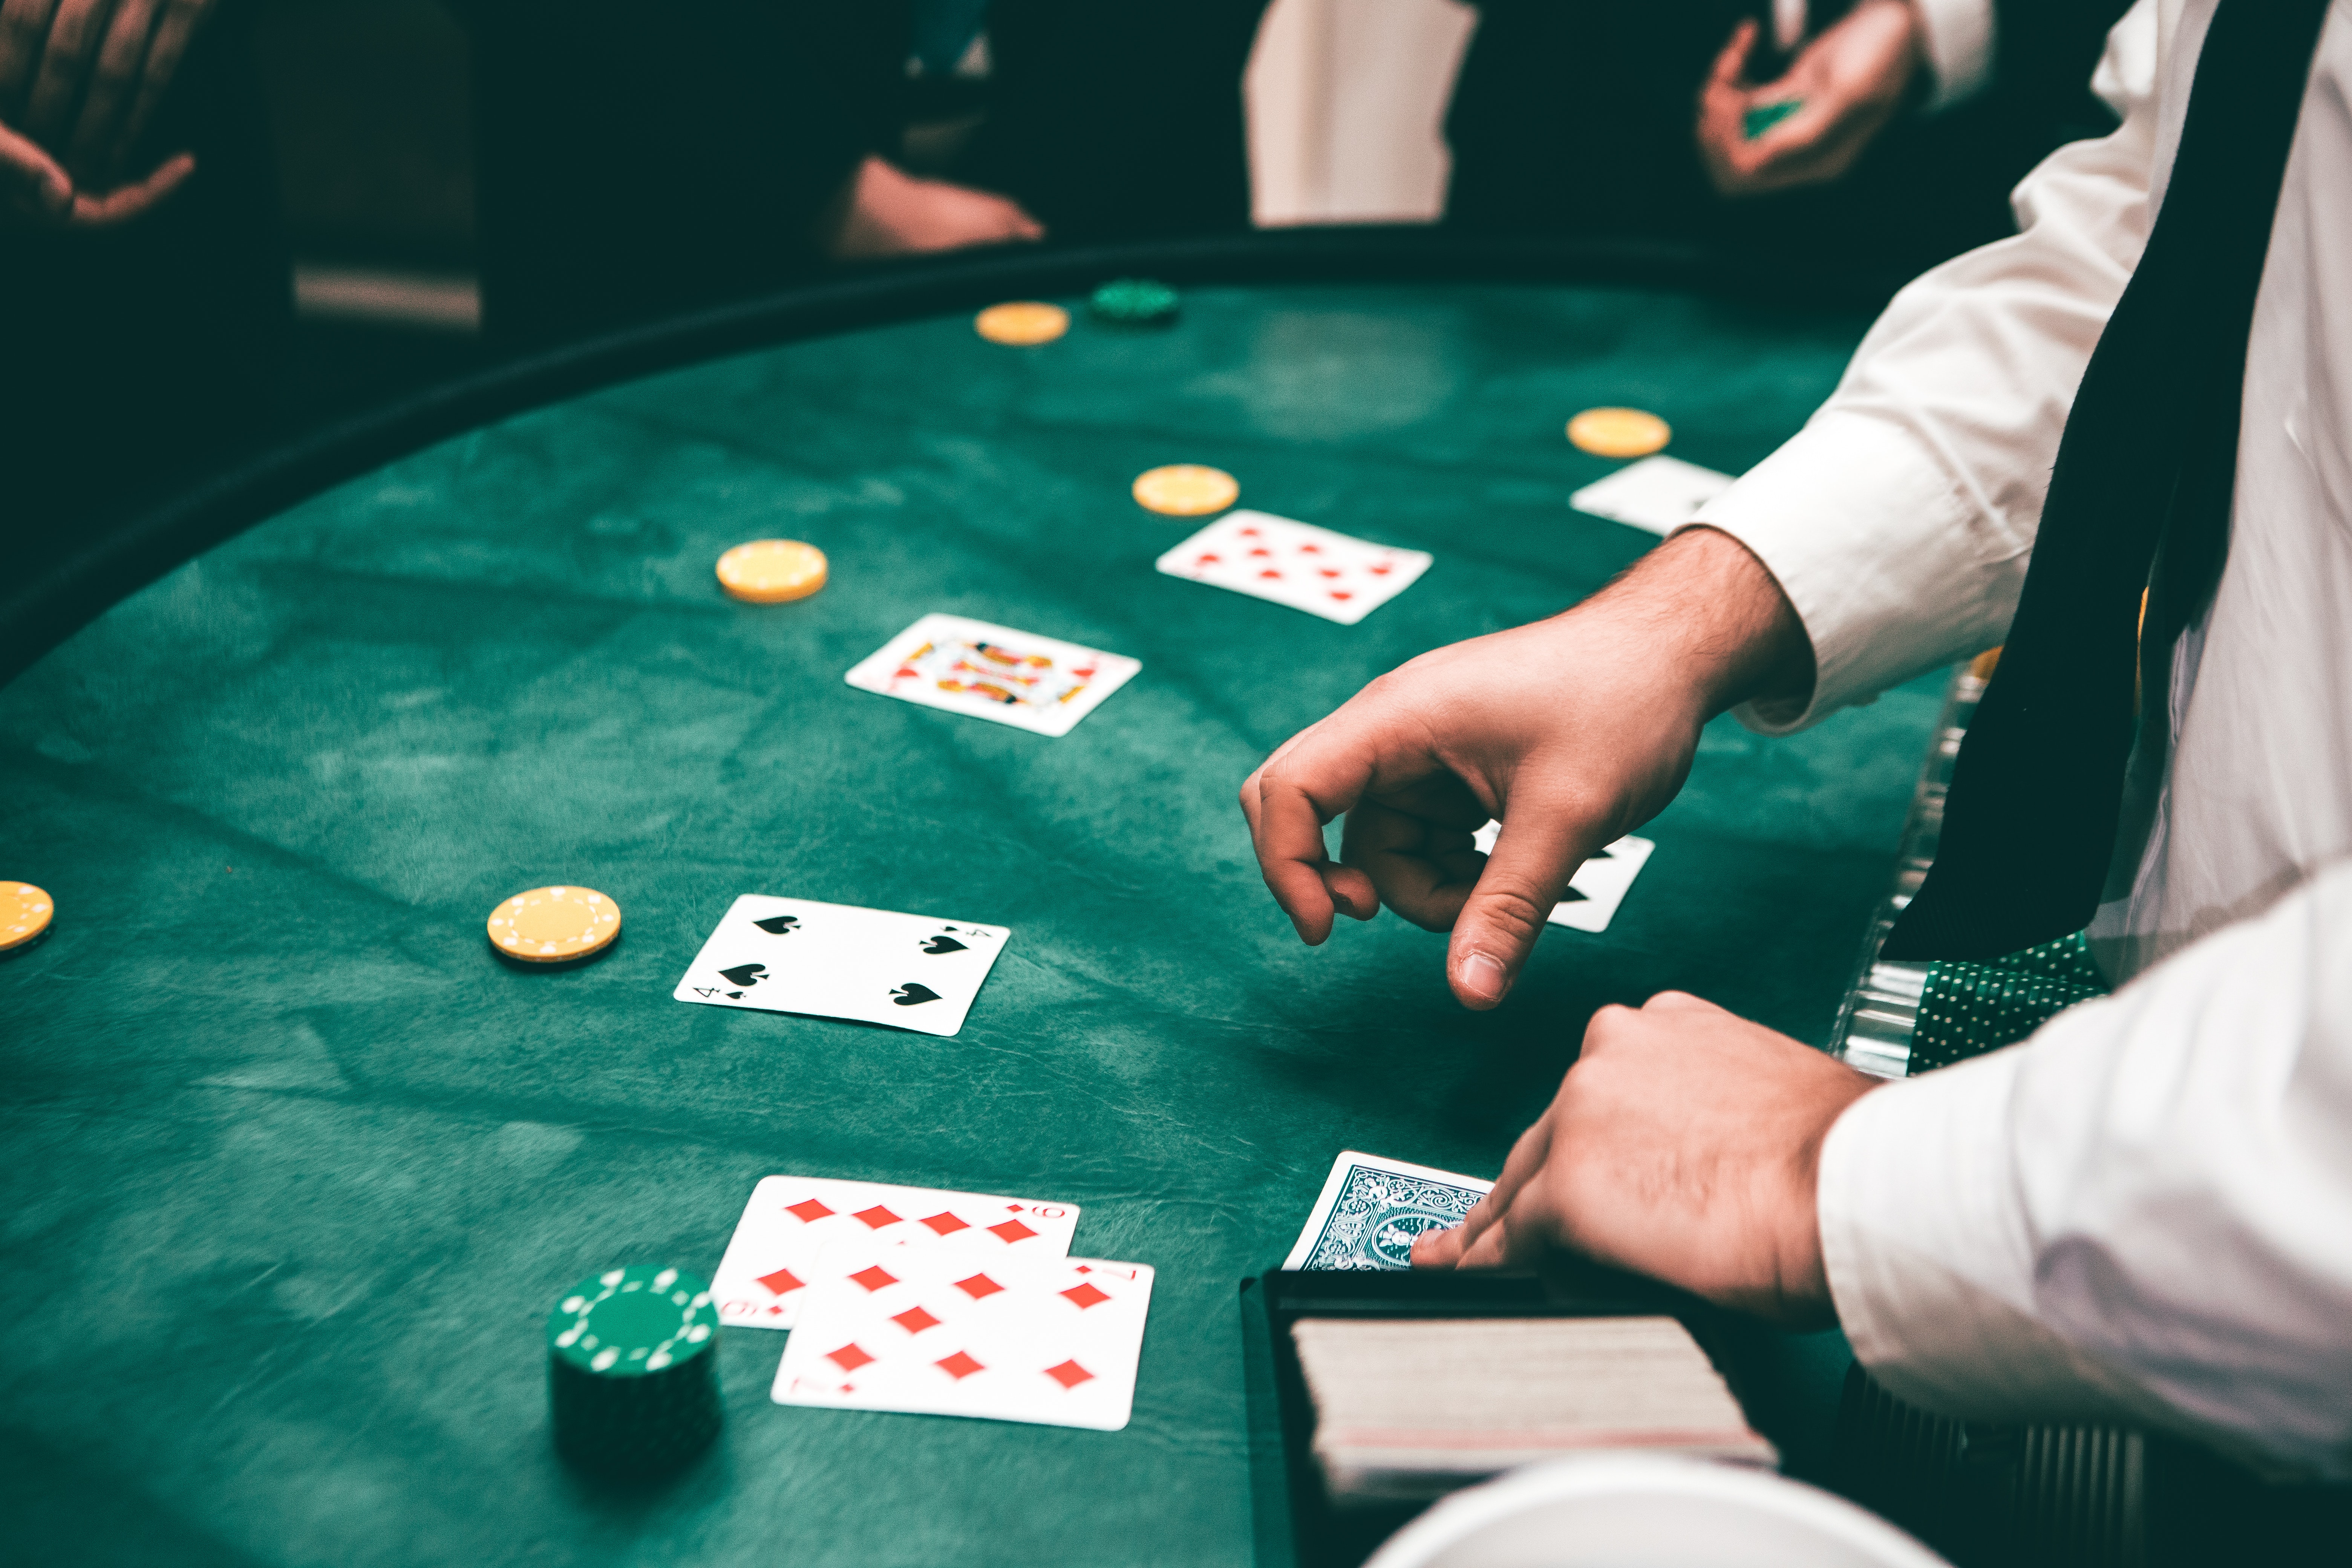 Attention à ne pas devenir addict à l'ambiance des casinos ou aux jeux de hasard en ligne. © Javon Swaby, Pexels